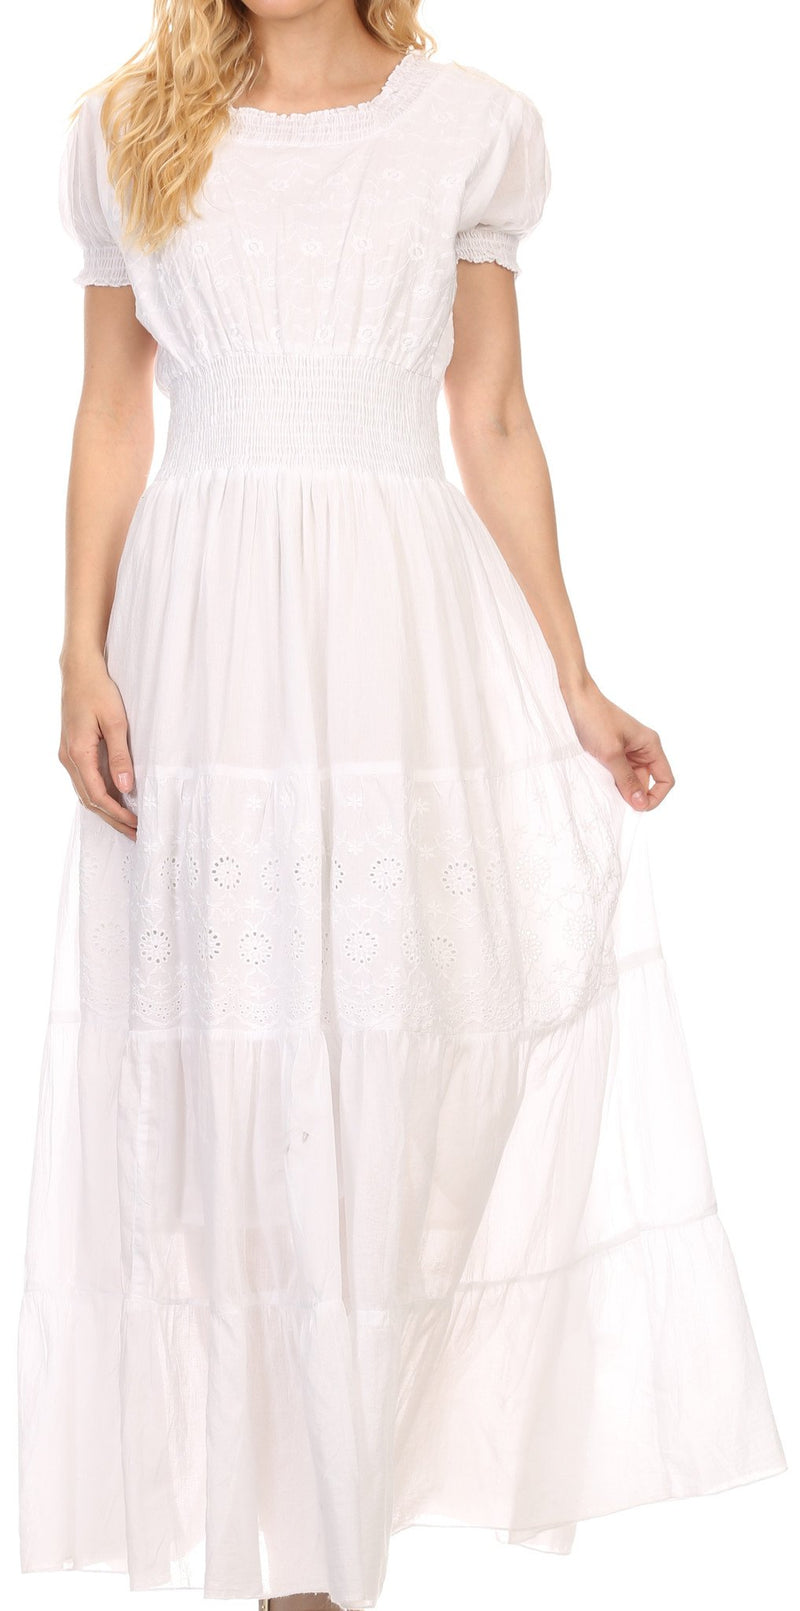 Sakkas Fresne Long Tall Floral Embroidered Scoop Adjustable Short Sleeve Dress